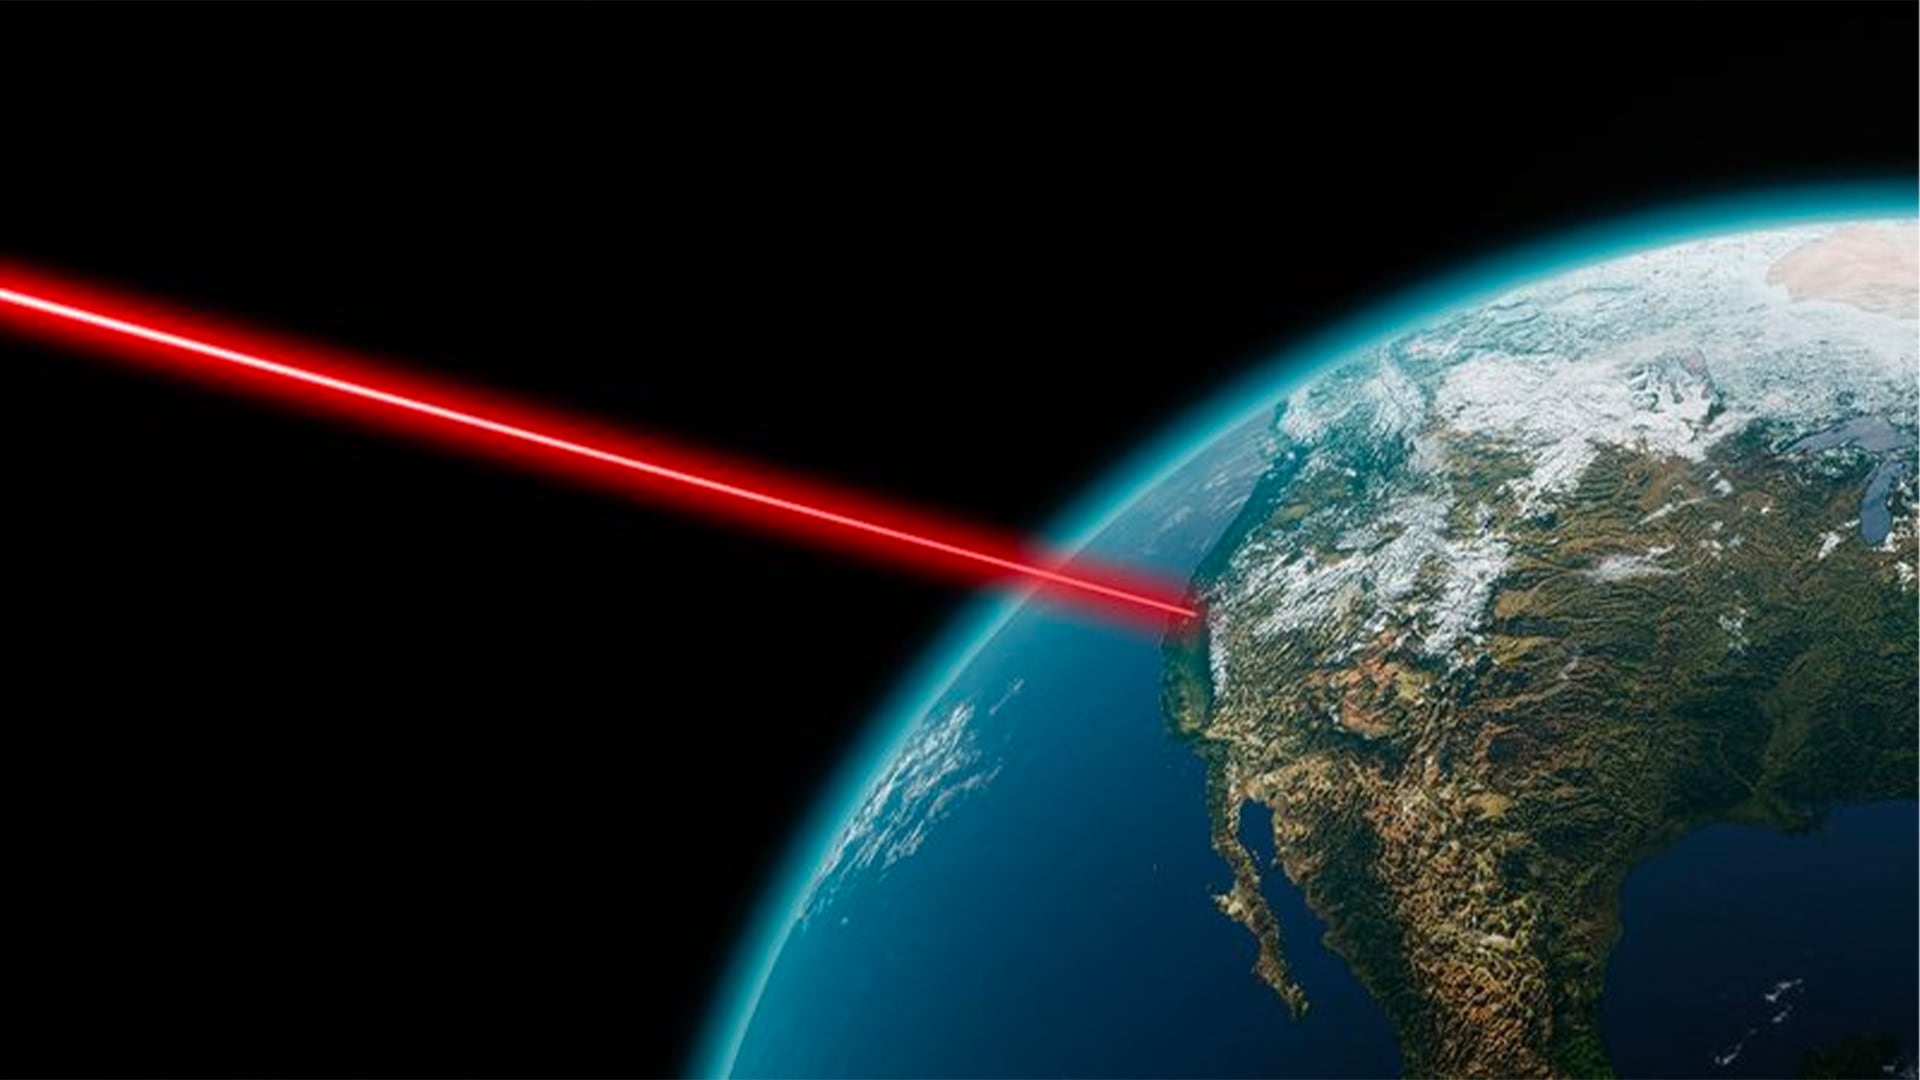 زمین یک پیام لیزری از فاصله ۱۶ میلیون کیلومتری دریافت کرد: معنی آن چیست